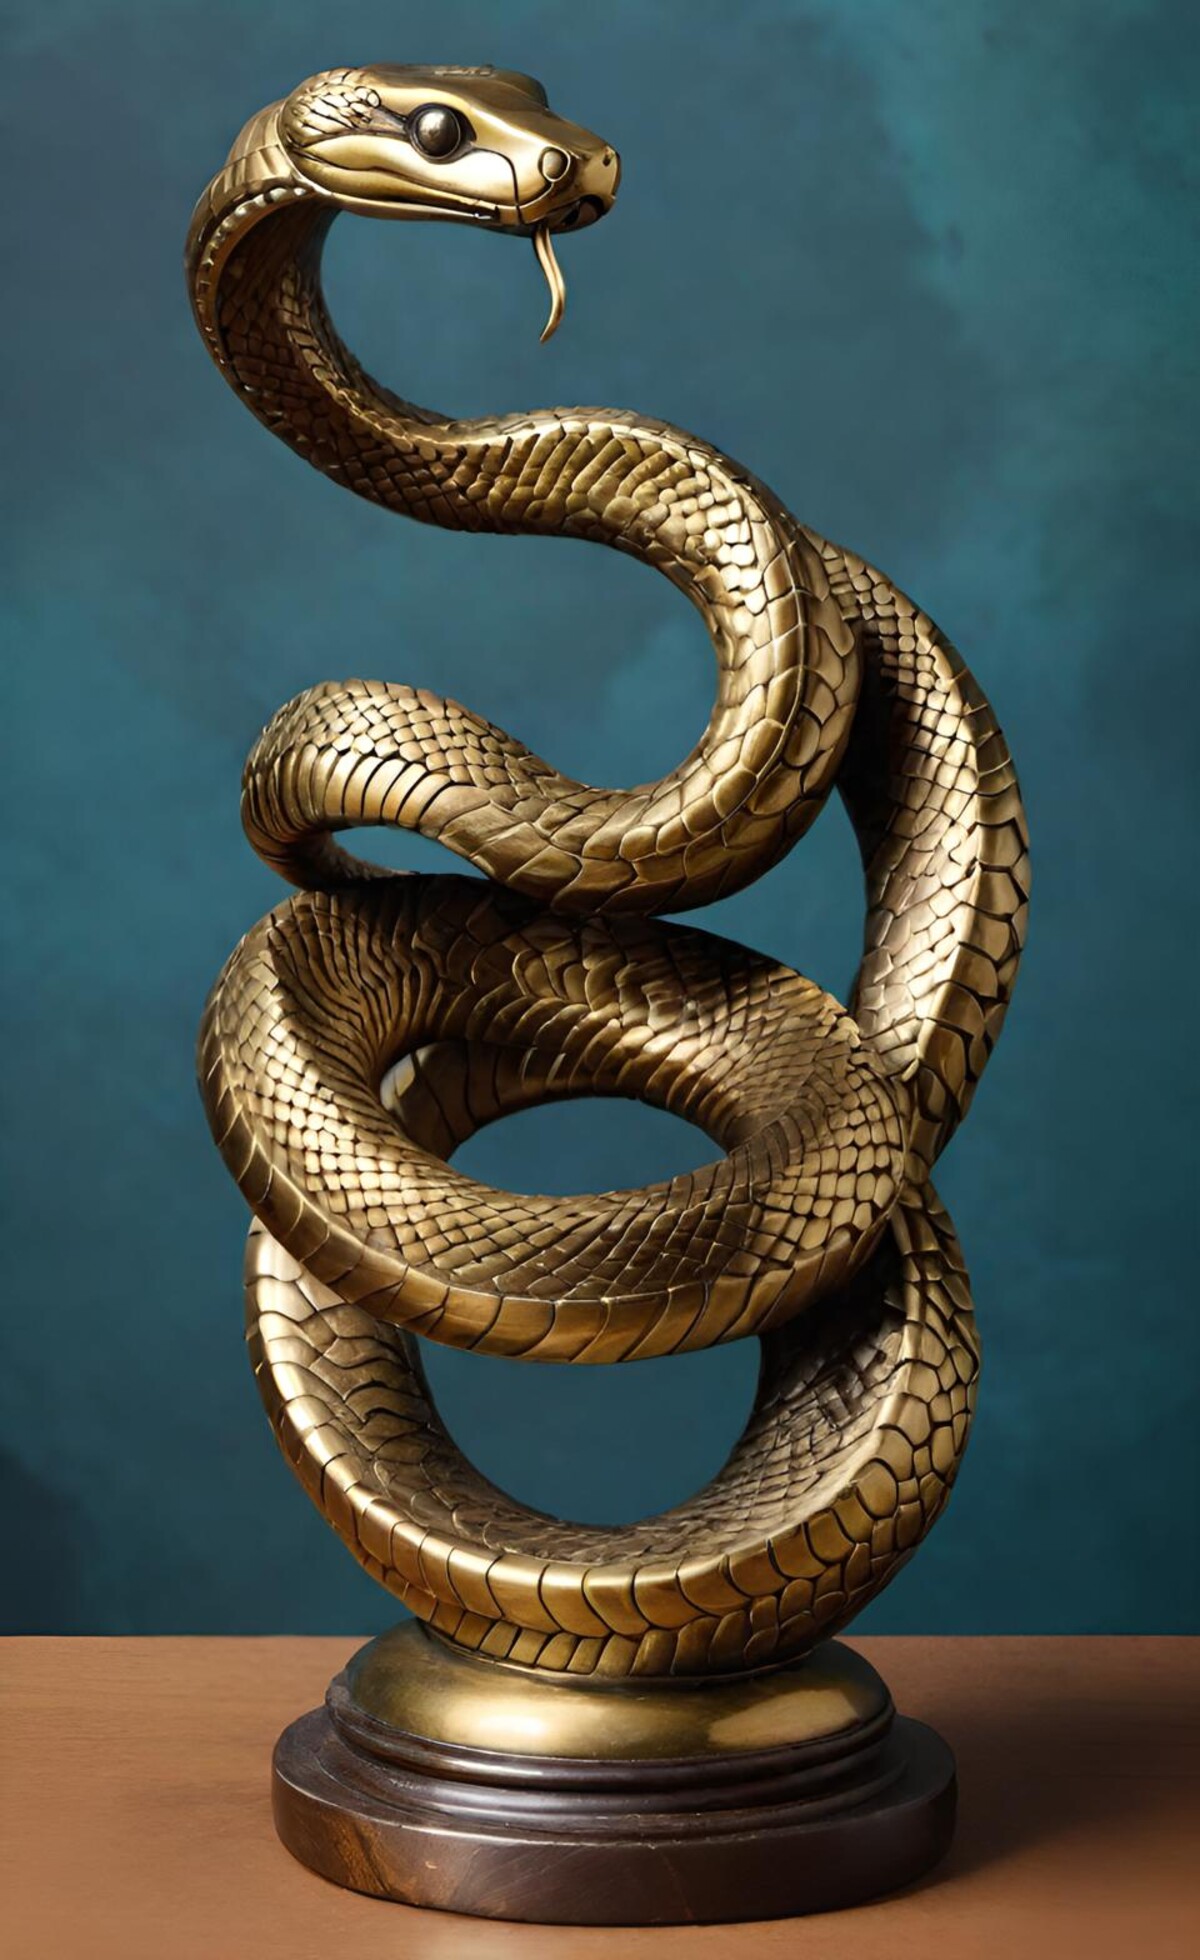 Mosadzná socha hada. Ilustračné foto.